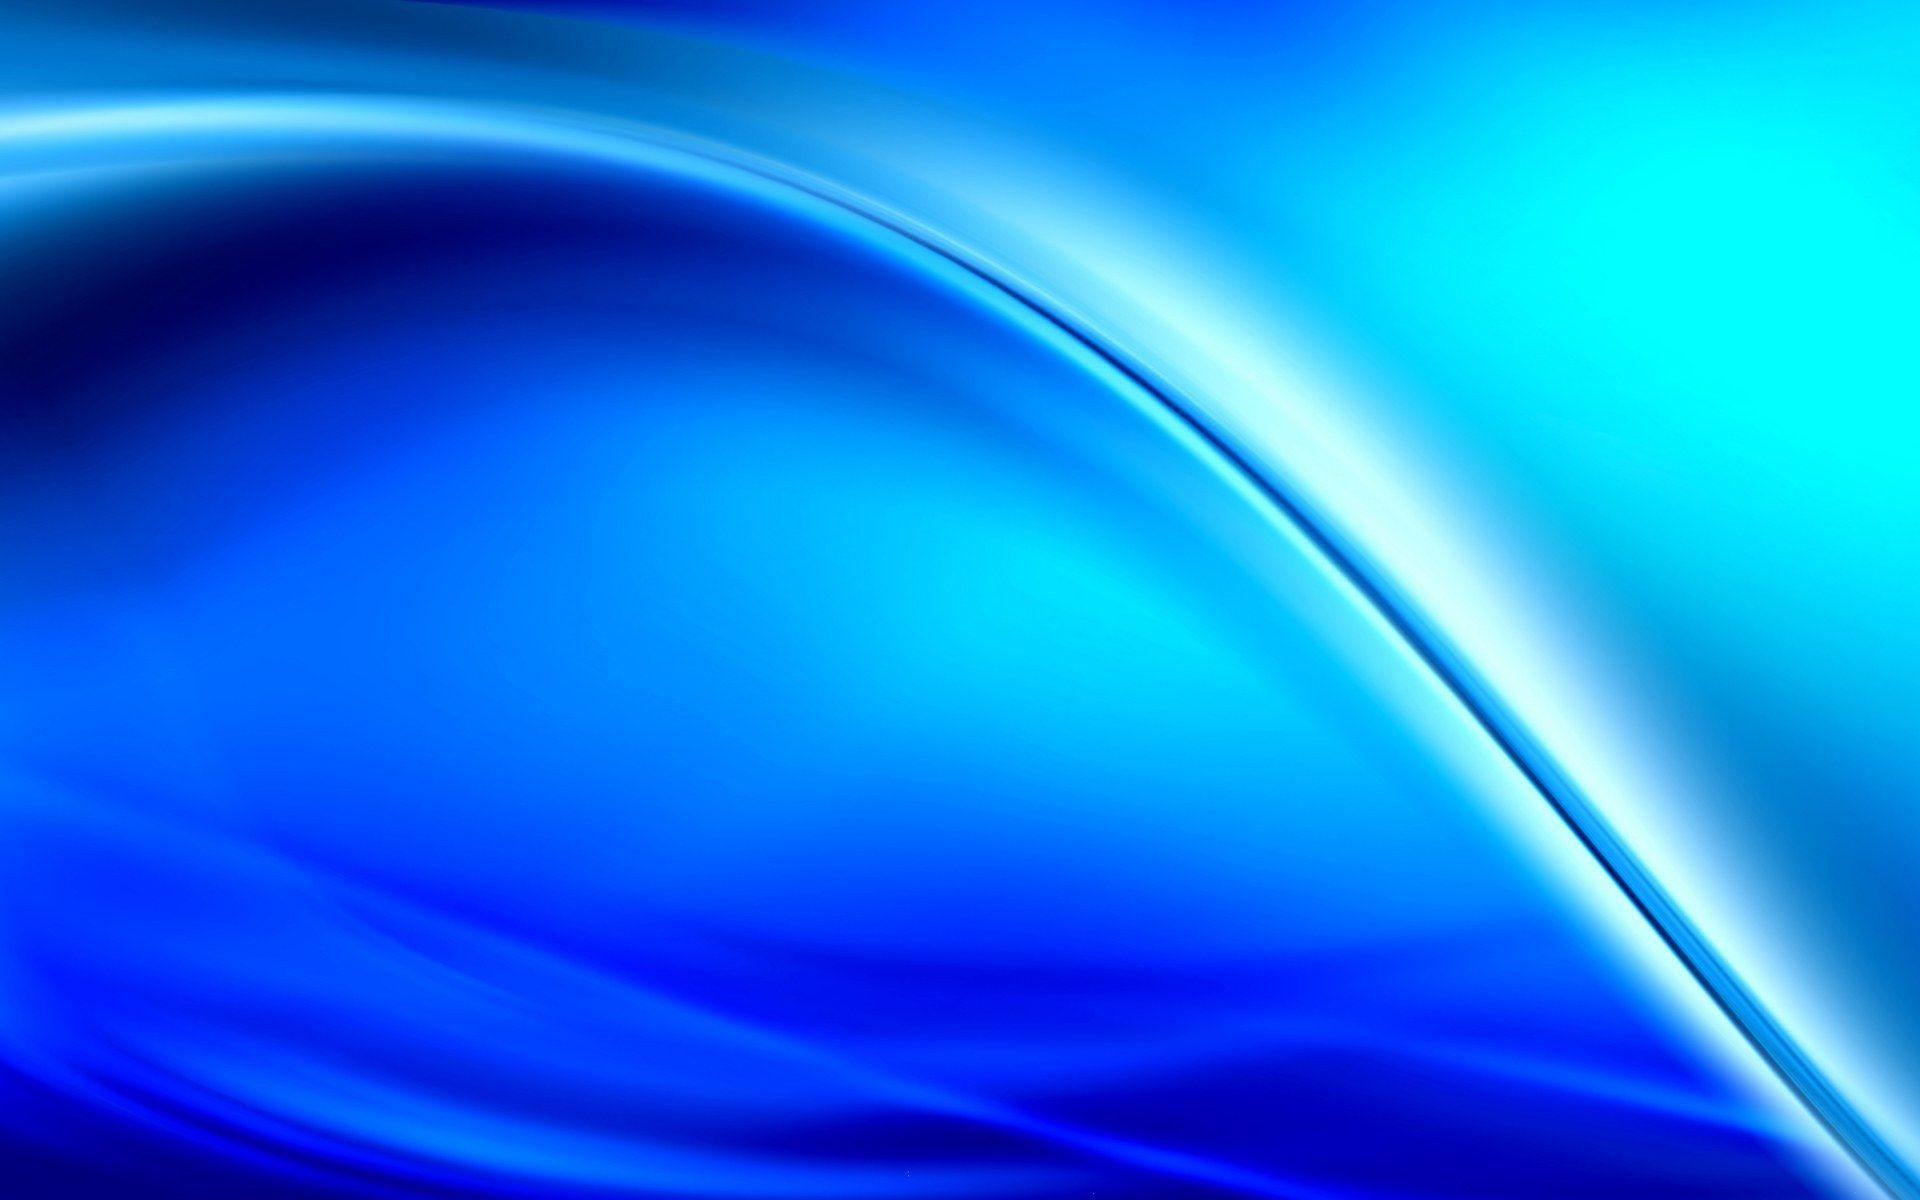 Hd Wallpaper Background Biru Keren : Download 76 Background Keren Biru